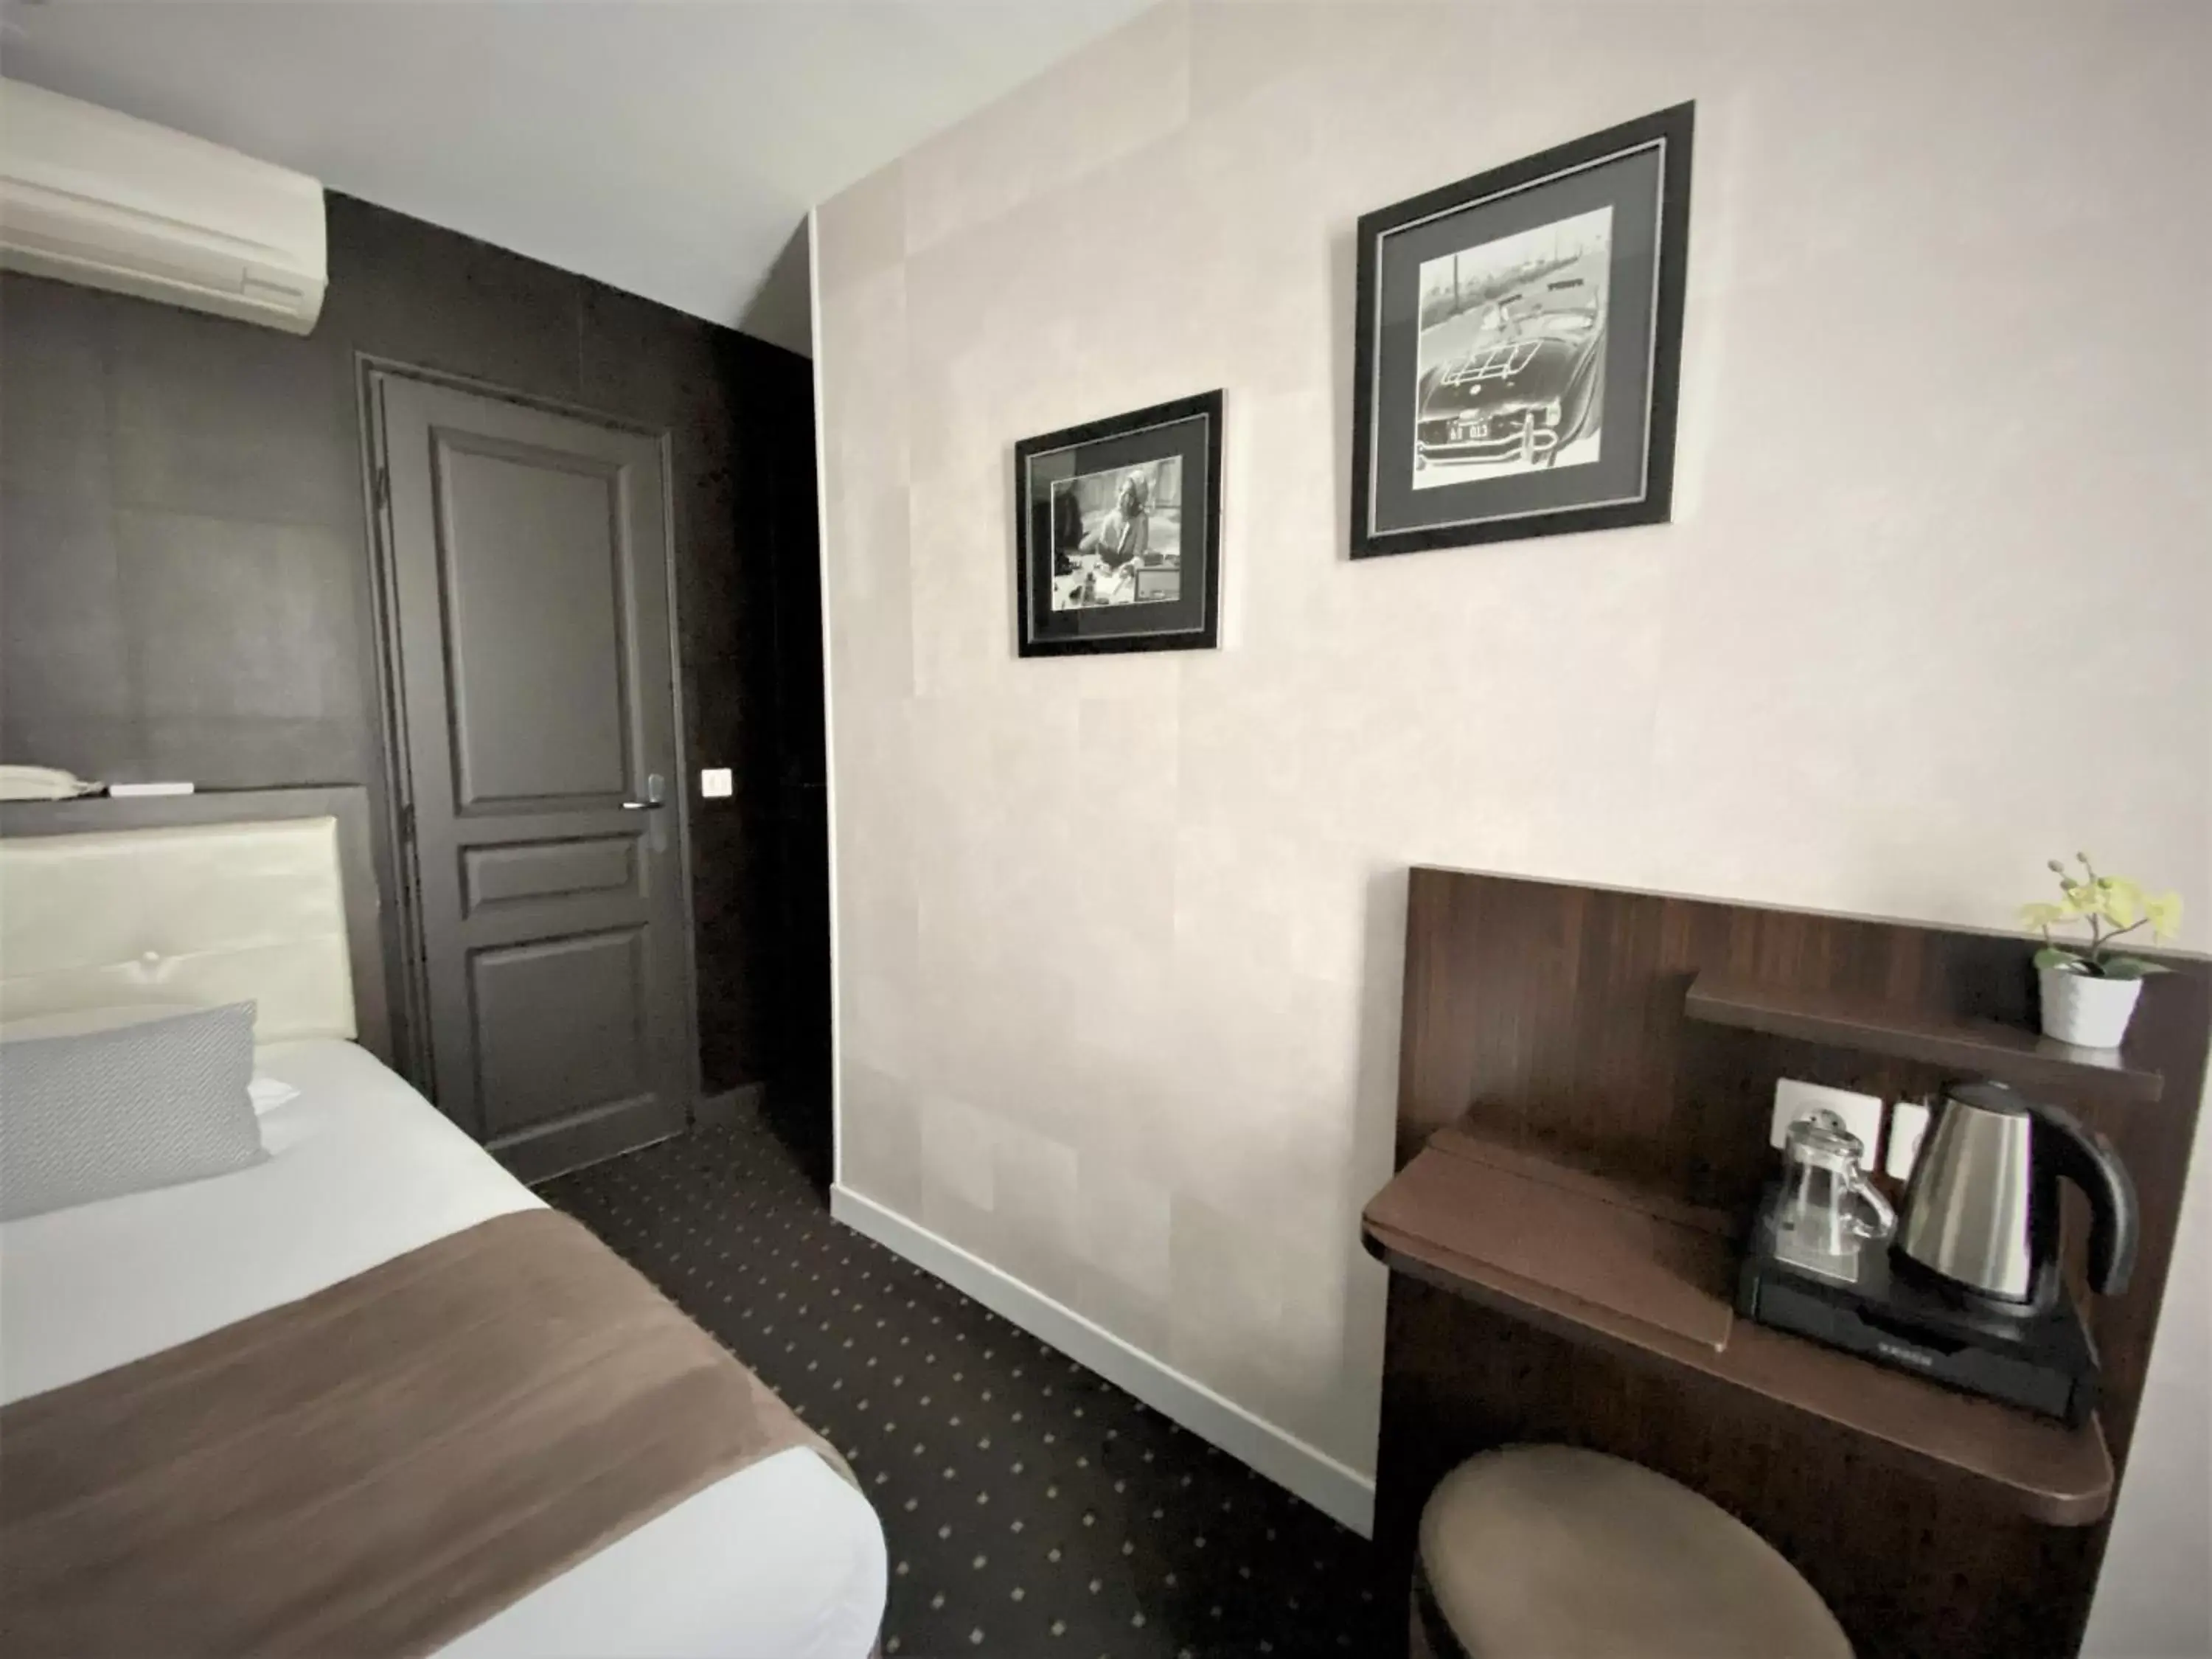 Bed in Hotel de la Paix Tour Eiffel